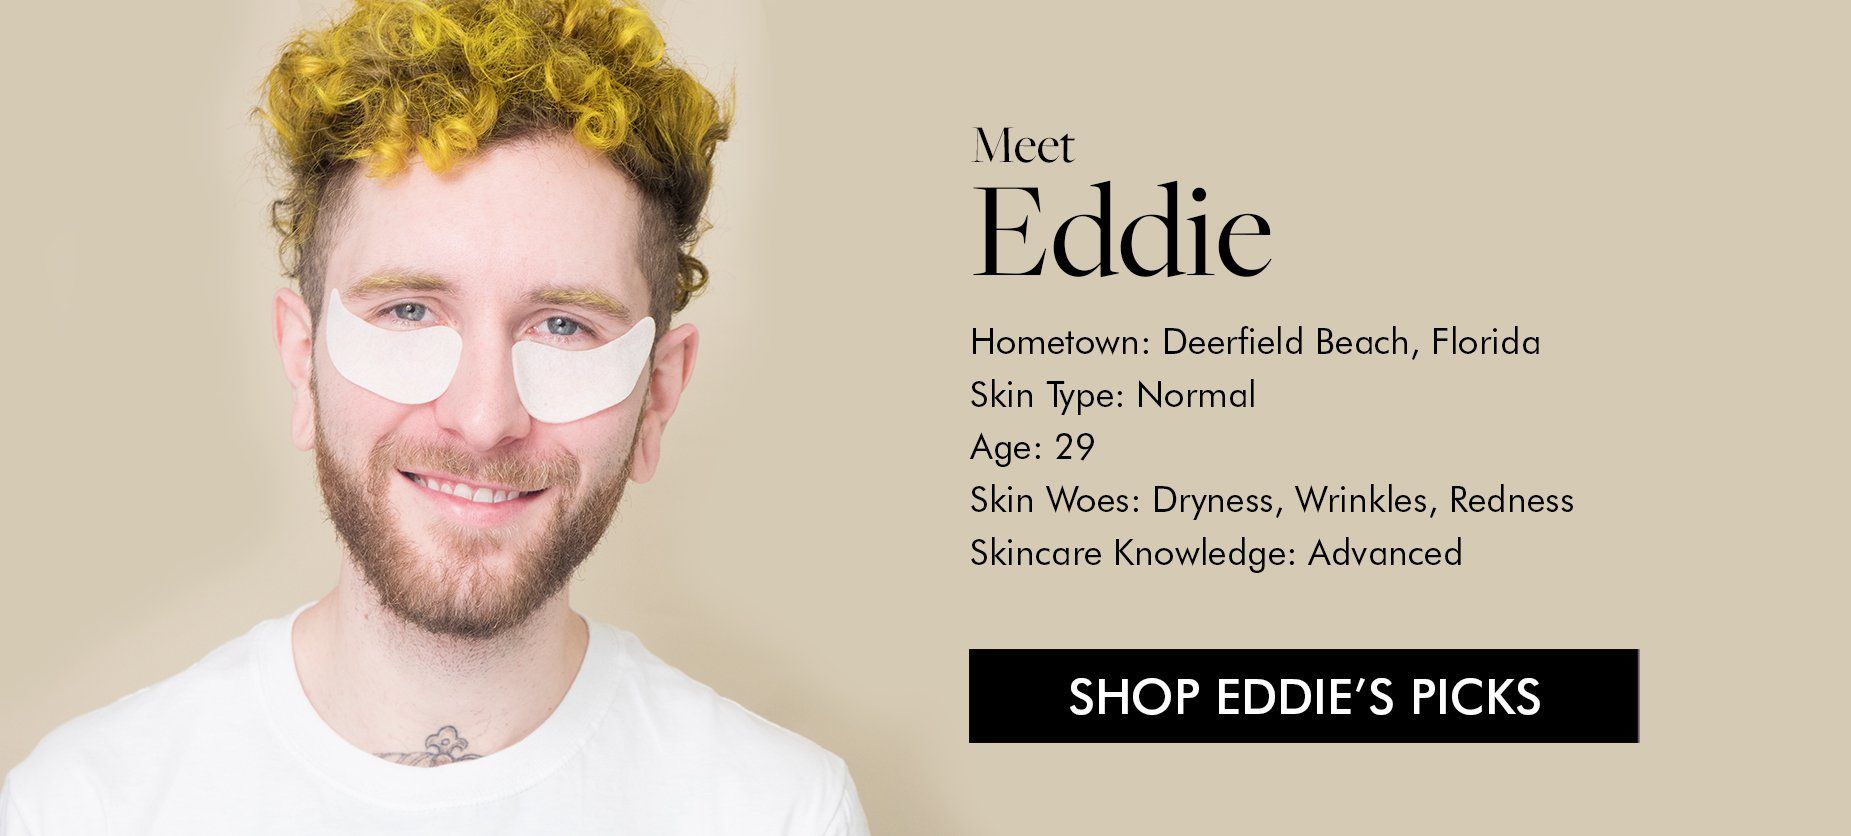 Shop Eddie's Picks